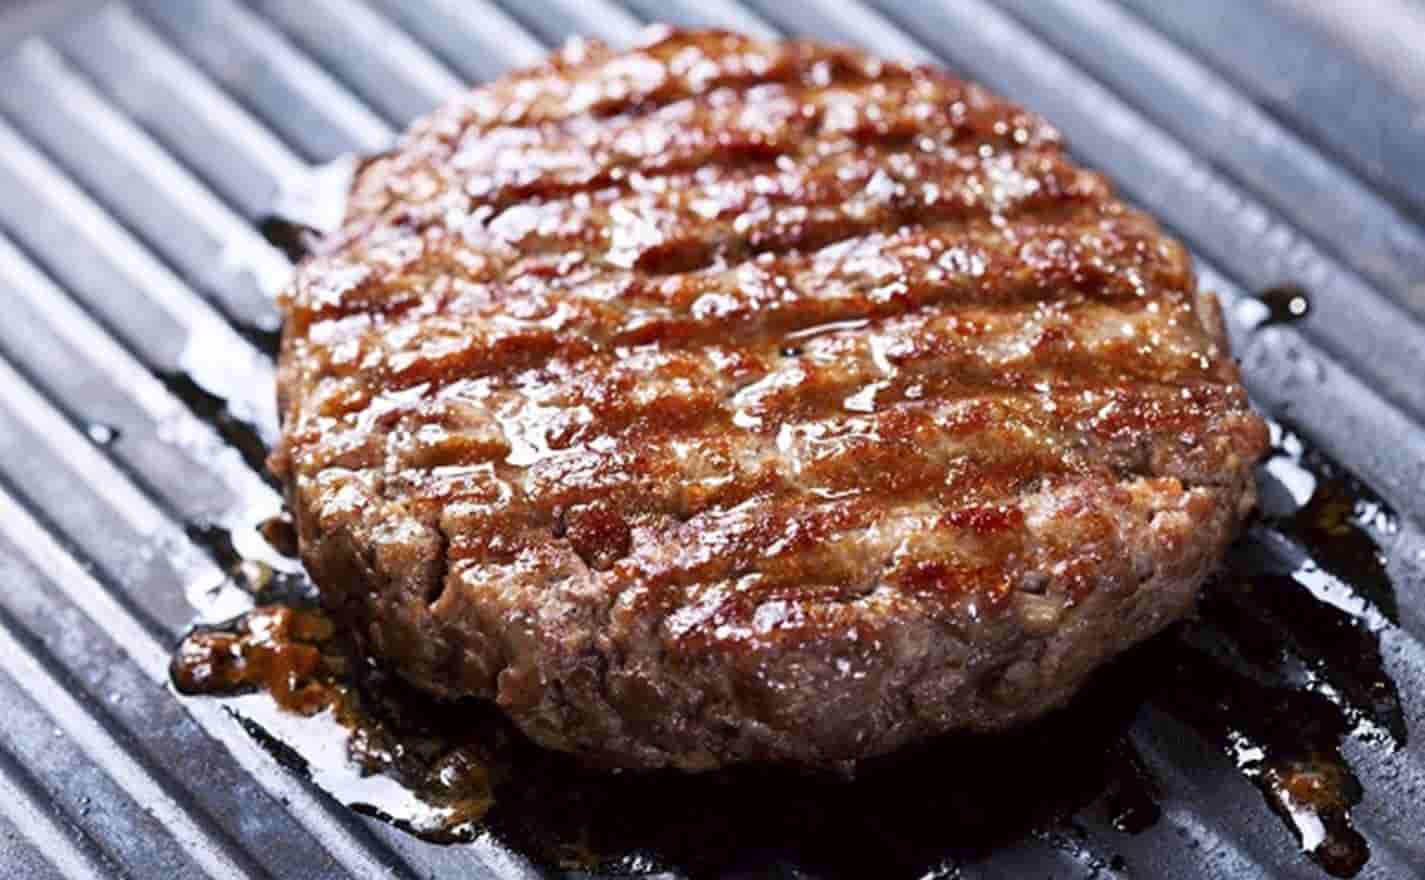 Faça carne de hambúrguer suculenta e caseira em menos de 5 minutos